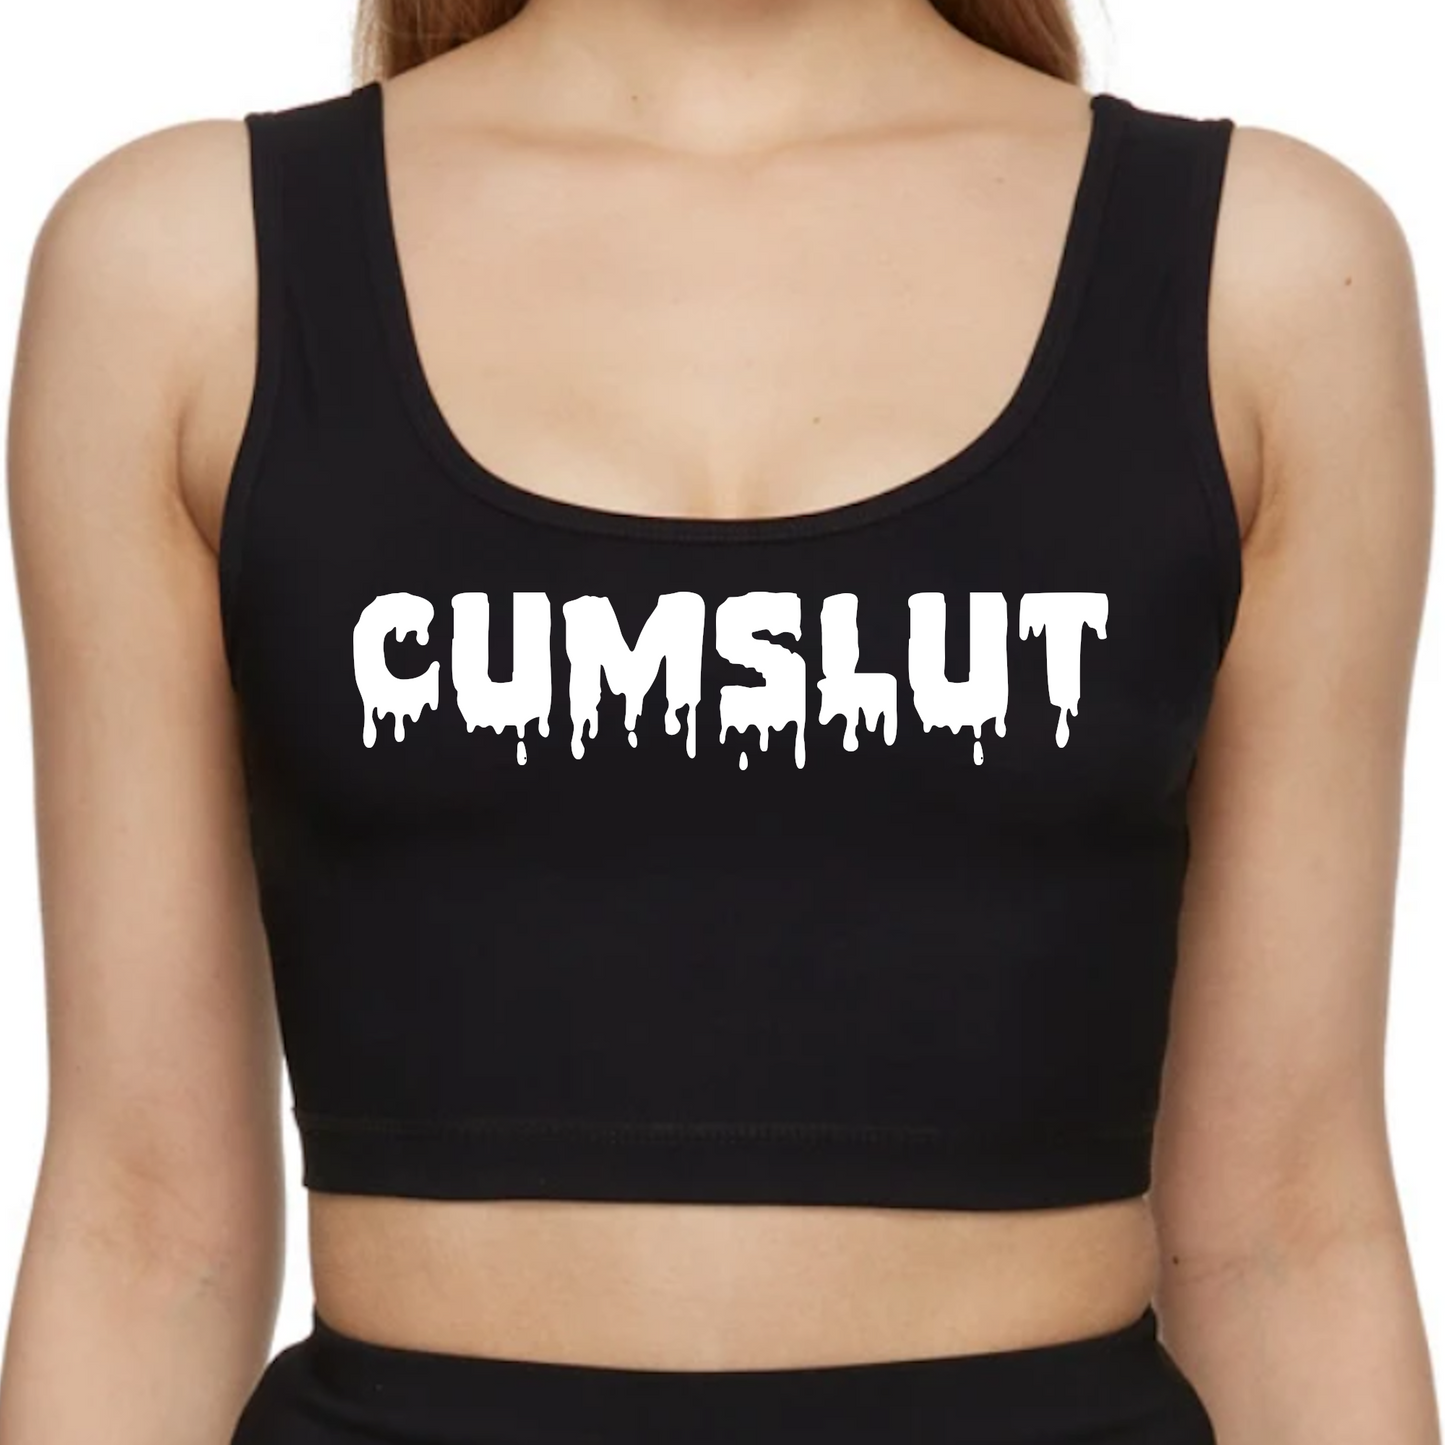 Cumslut Crop Top / Slut Tank Top